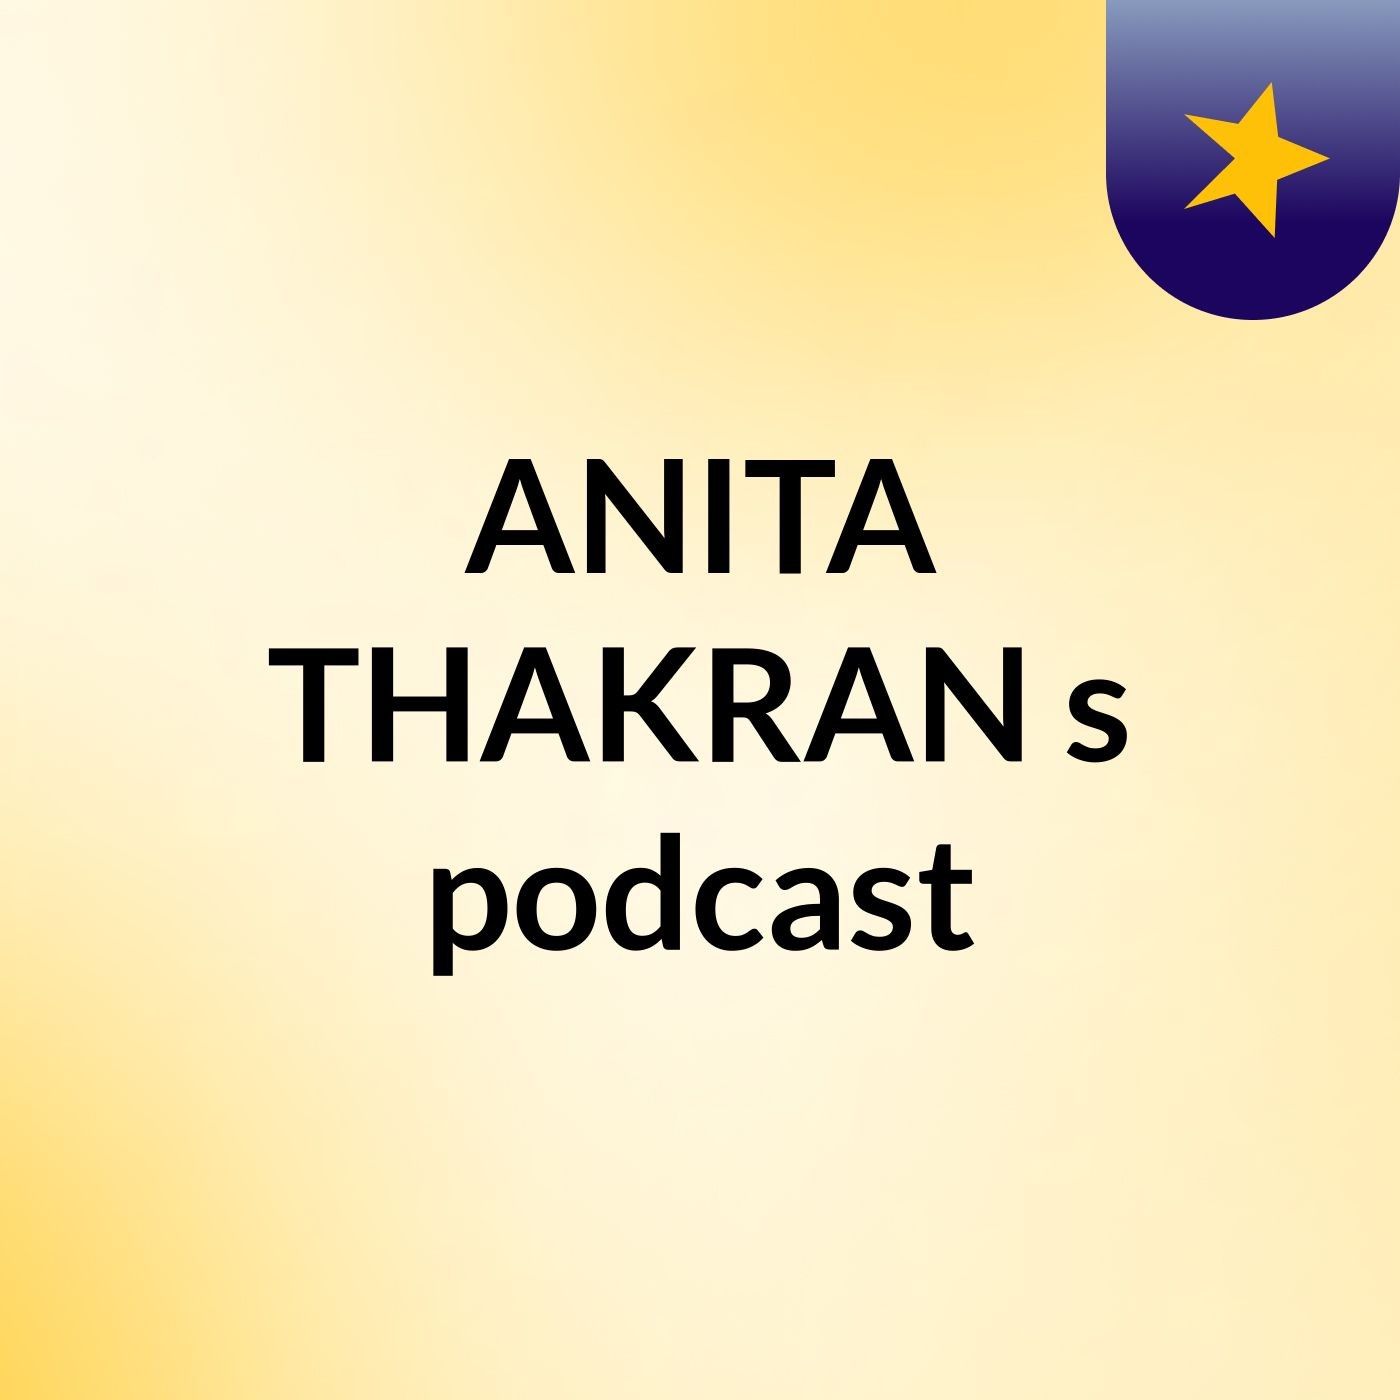 Episode 4 - ANITA THAKRAN's podcast